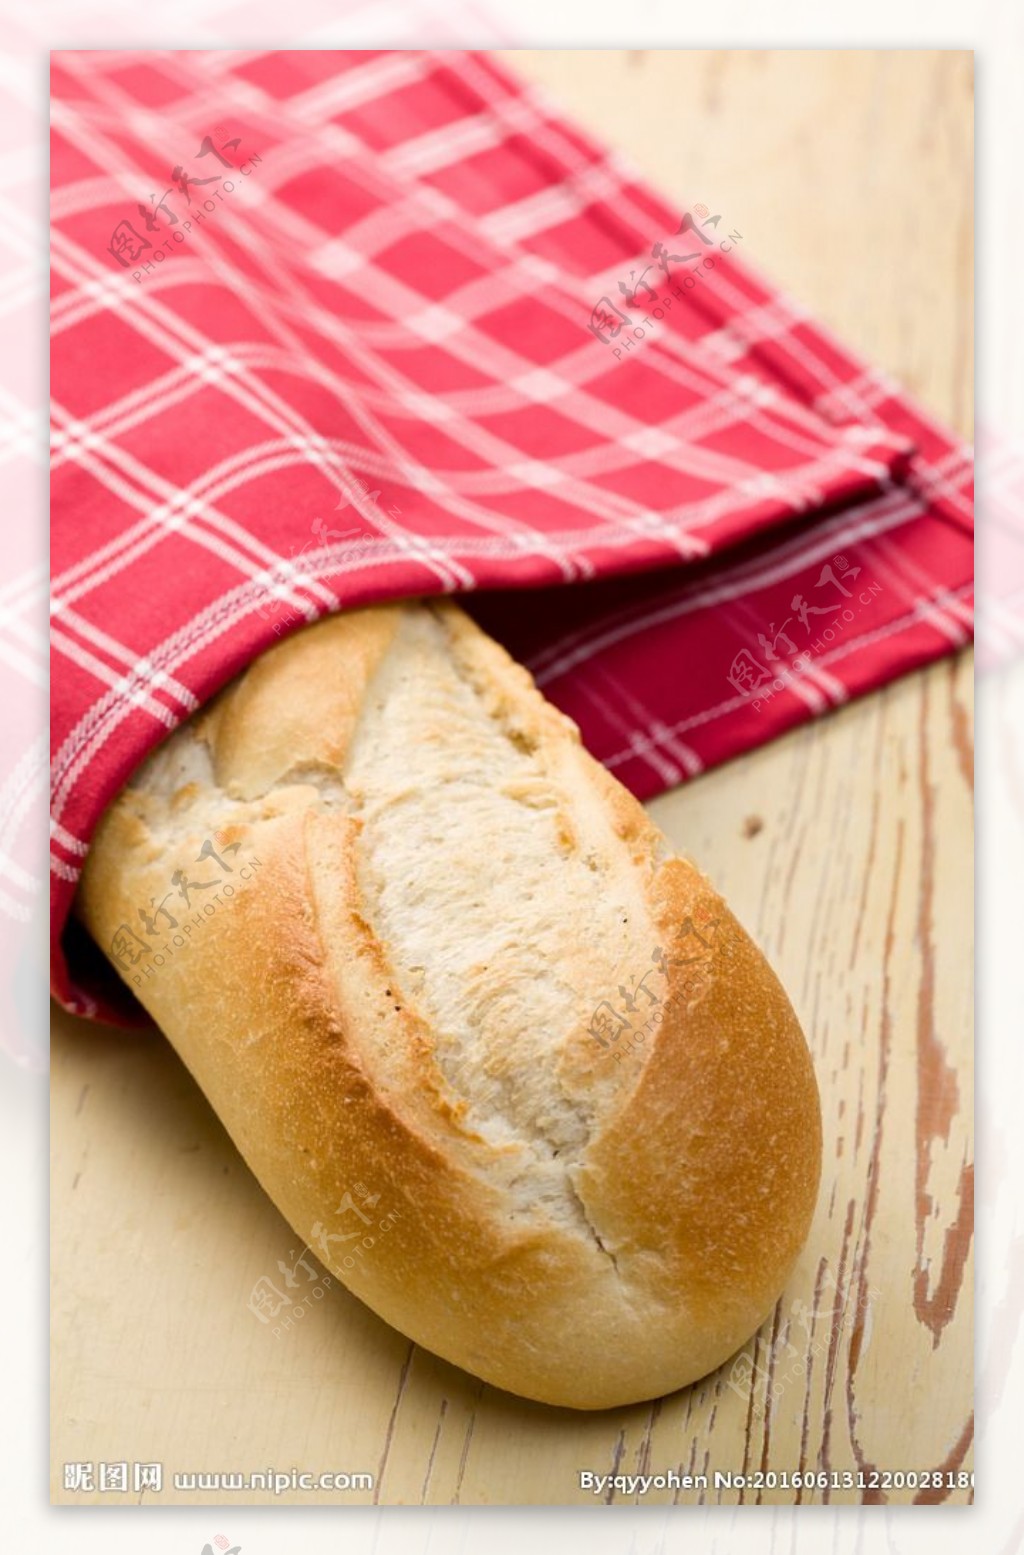 法国面包